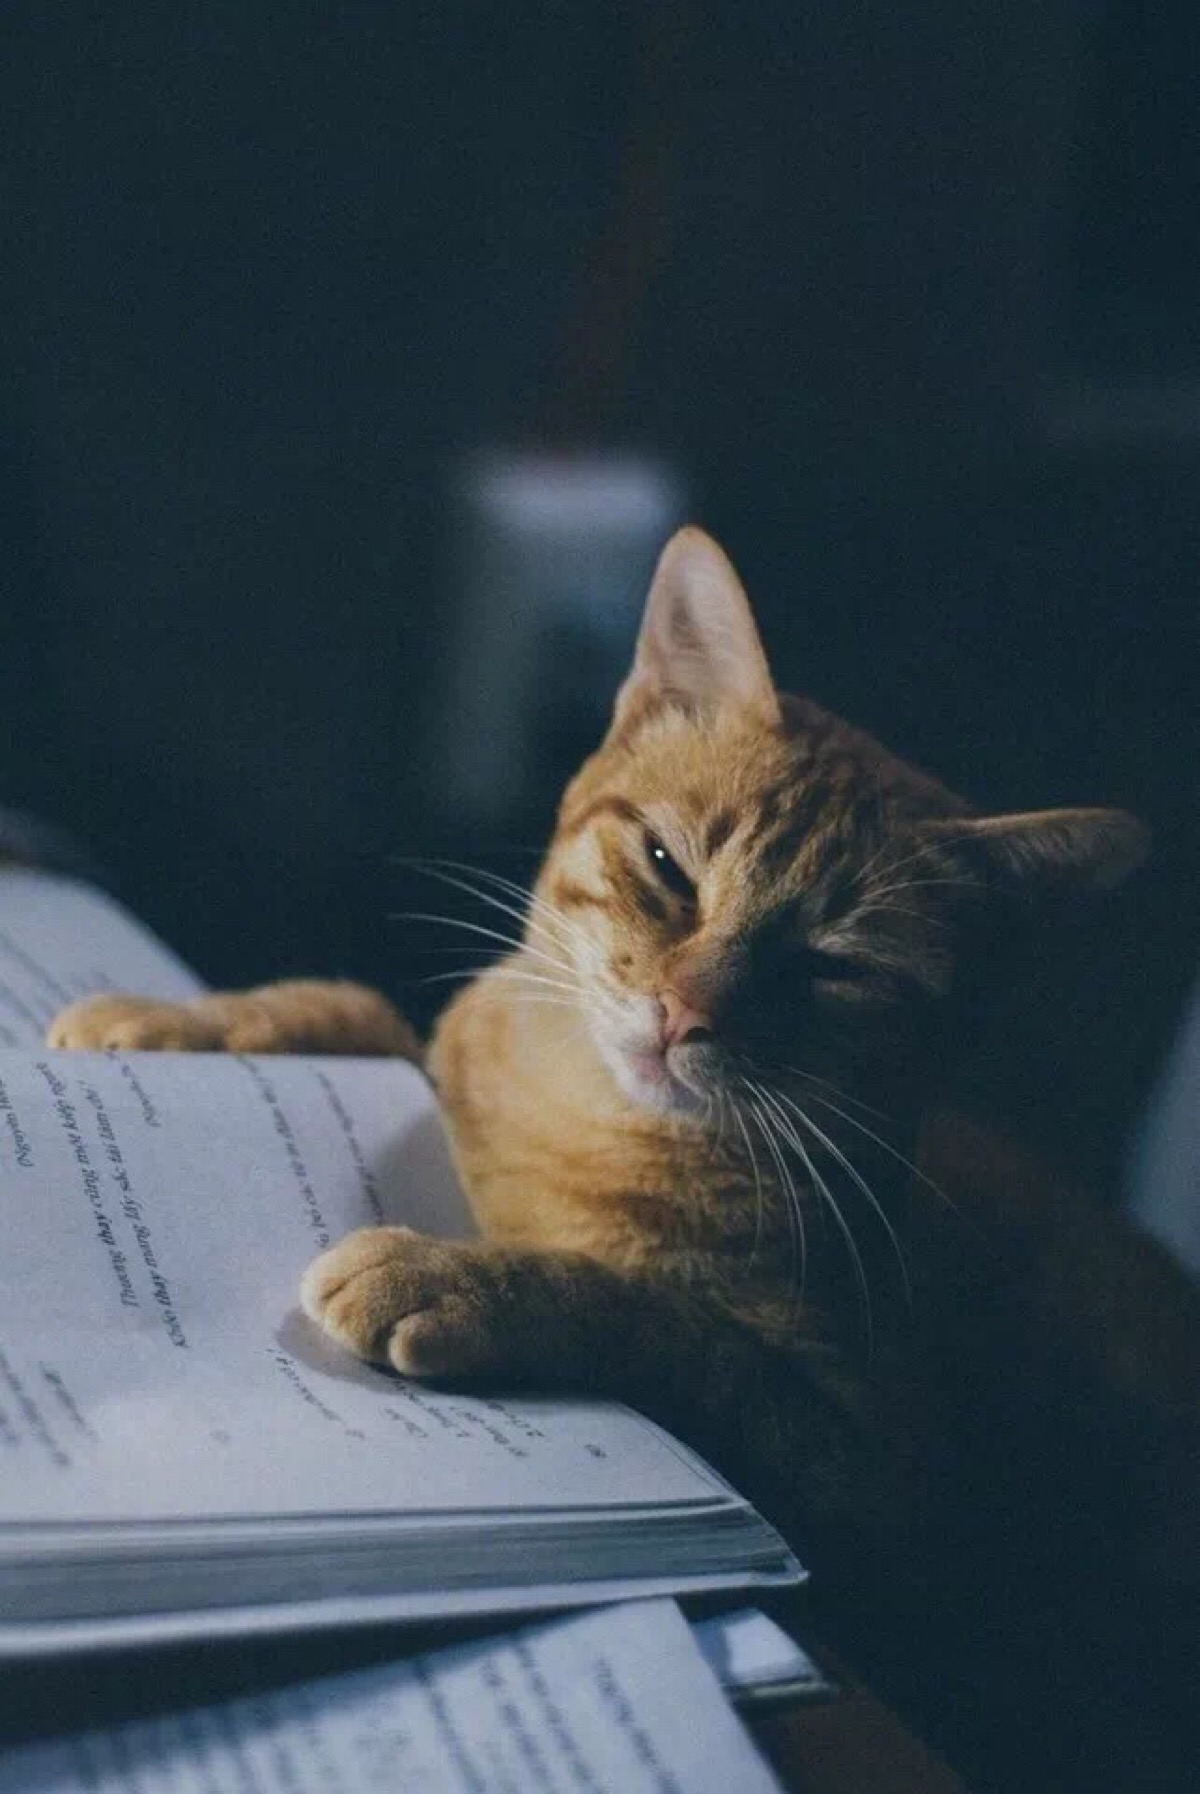 这只猫认真看书学习起来,好认真啊,不要笑,严肃点.